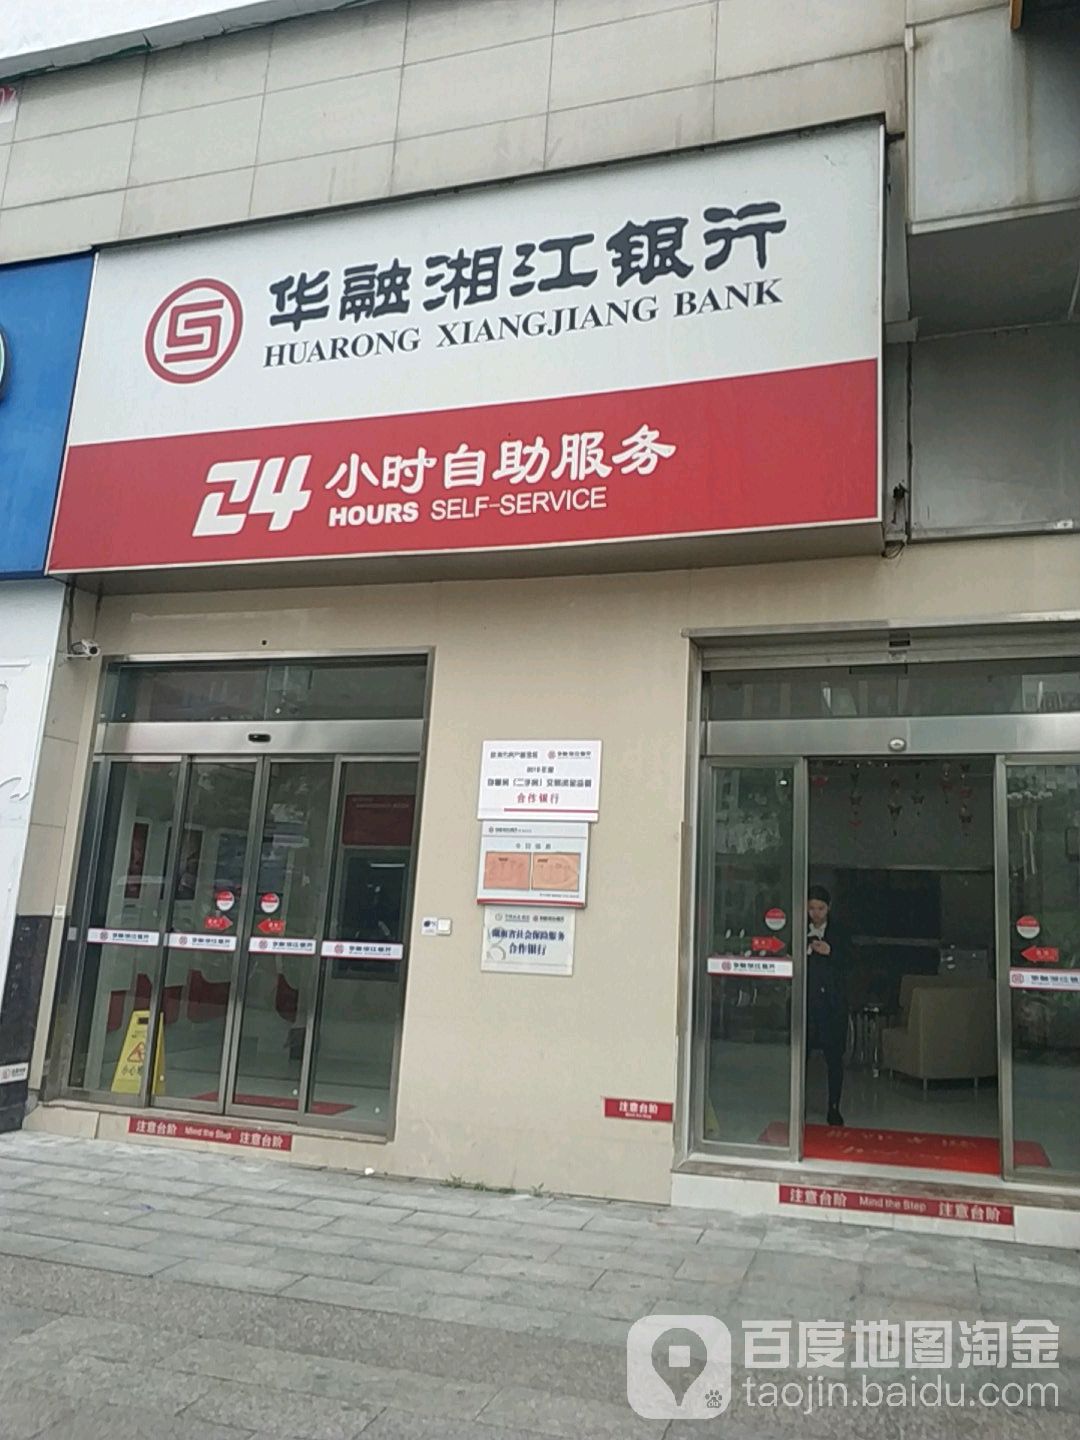 湖南银行24小时自主银行